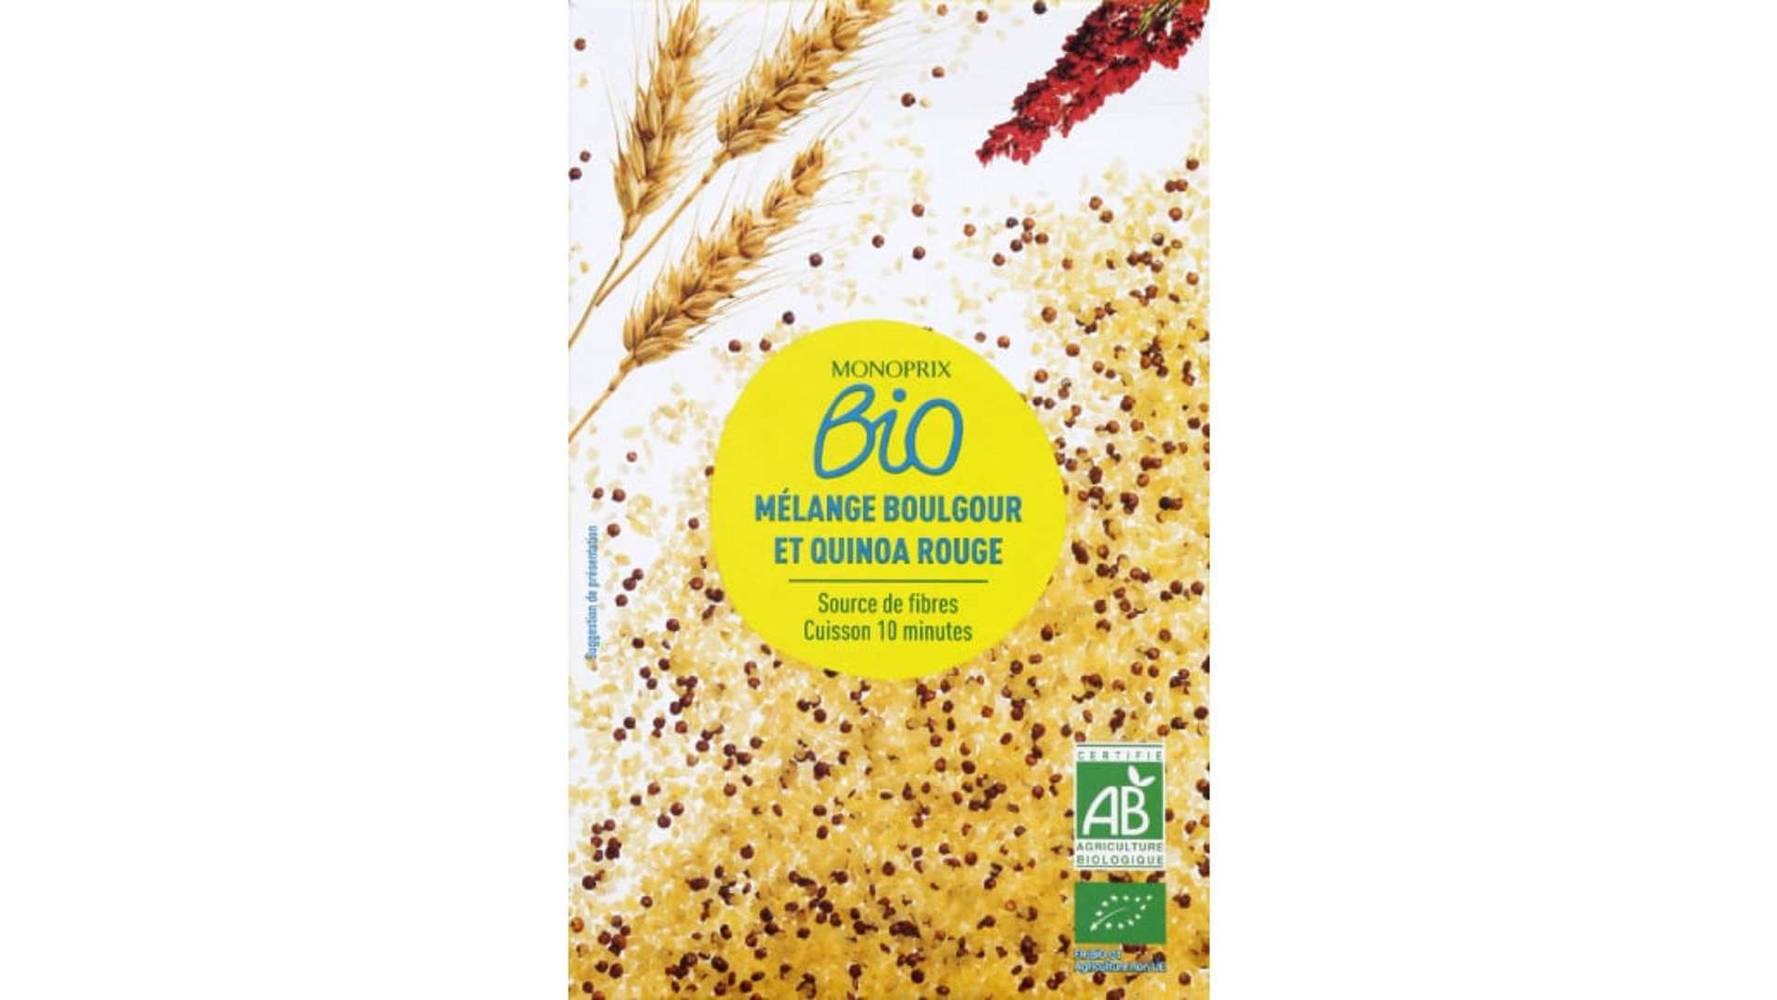 Monoprix Bio Mélange boulgour et quinoa rouge La boîte de 400g